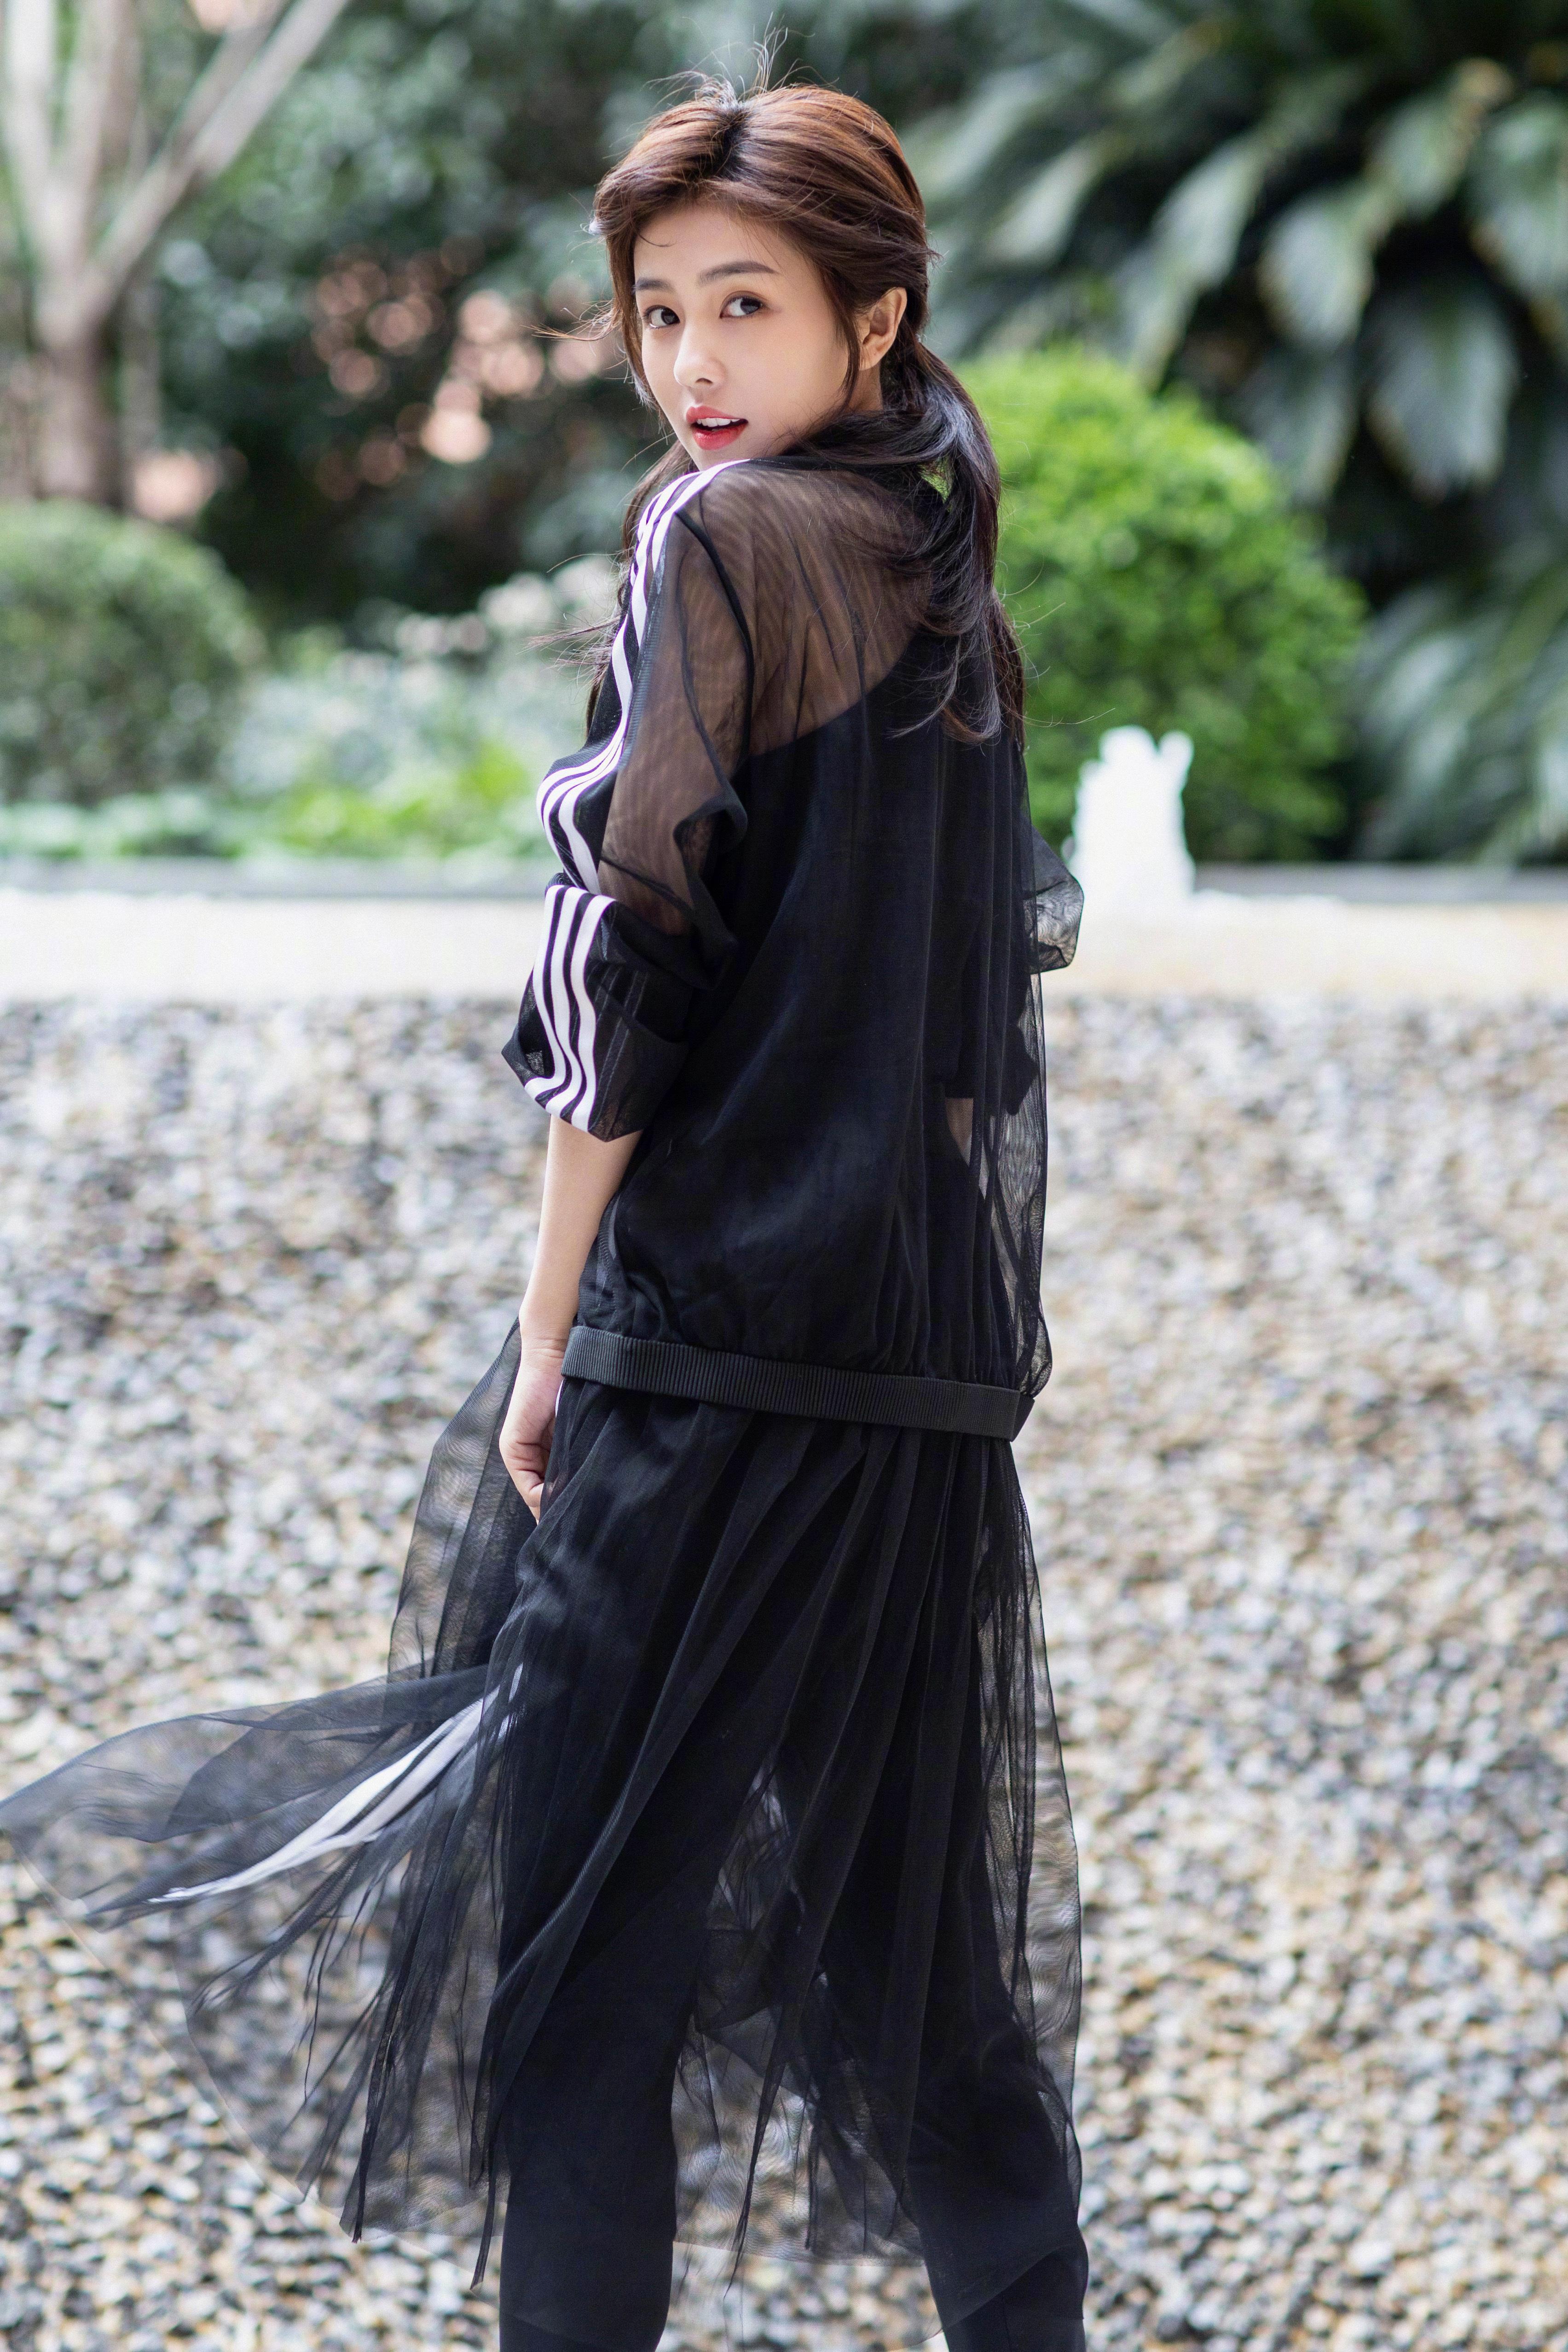 美女演员白鹿受邀出席Adidas Originals全新sleek系列开幕活动 一袭黑色轻纱亮相,